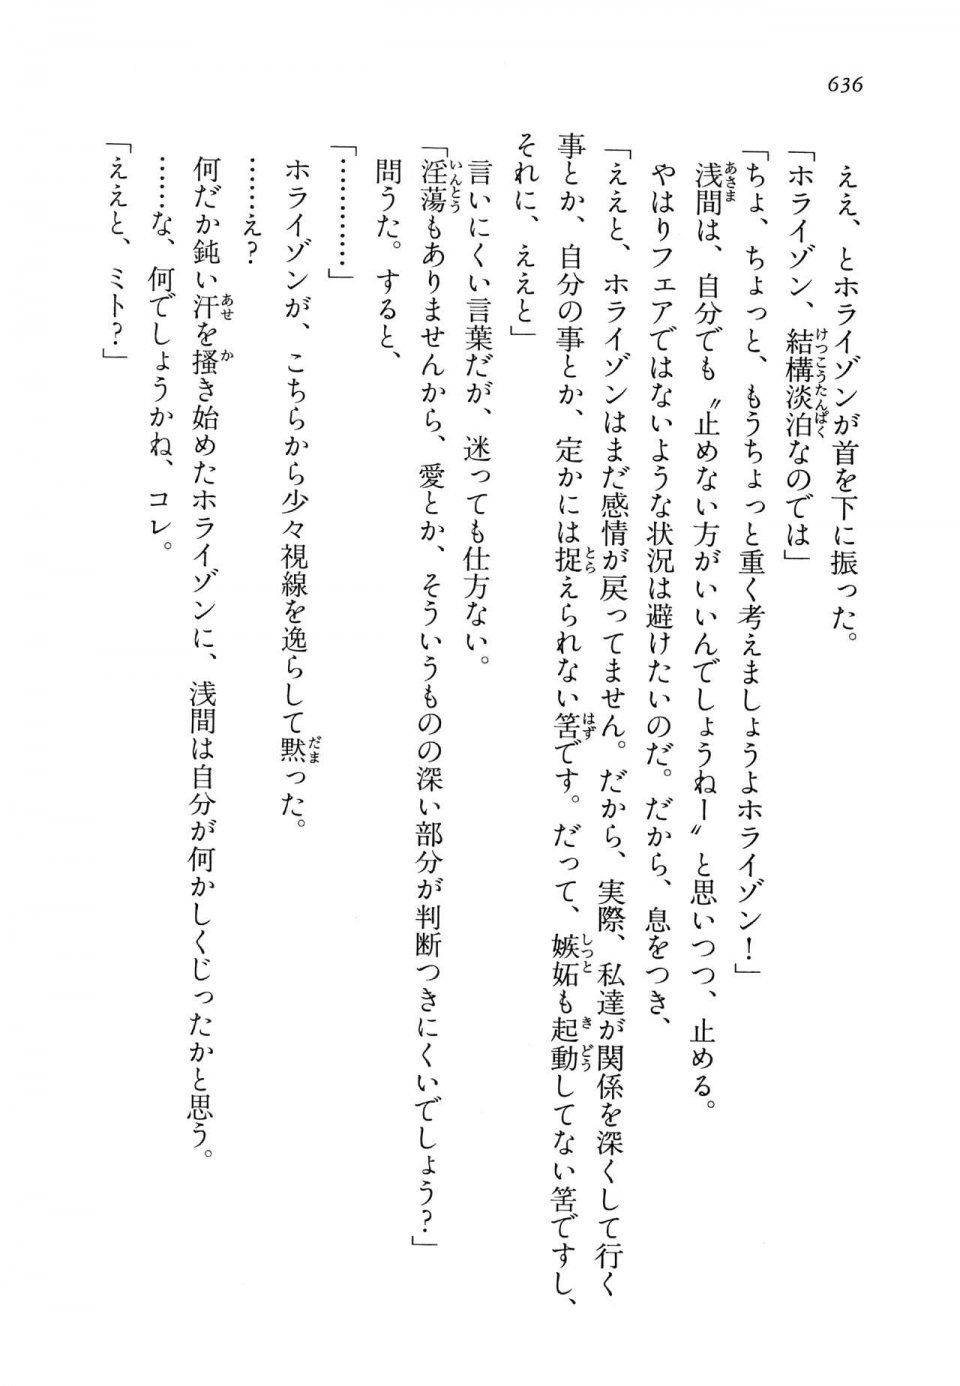 Kyoukai Senjou no Horizon LN Vol 14(6B) - Photo #636